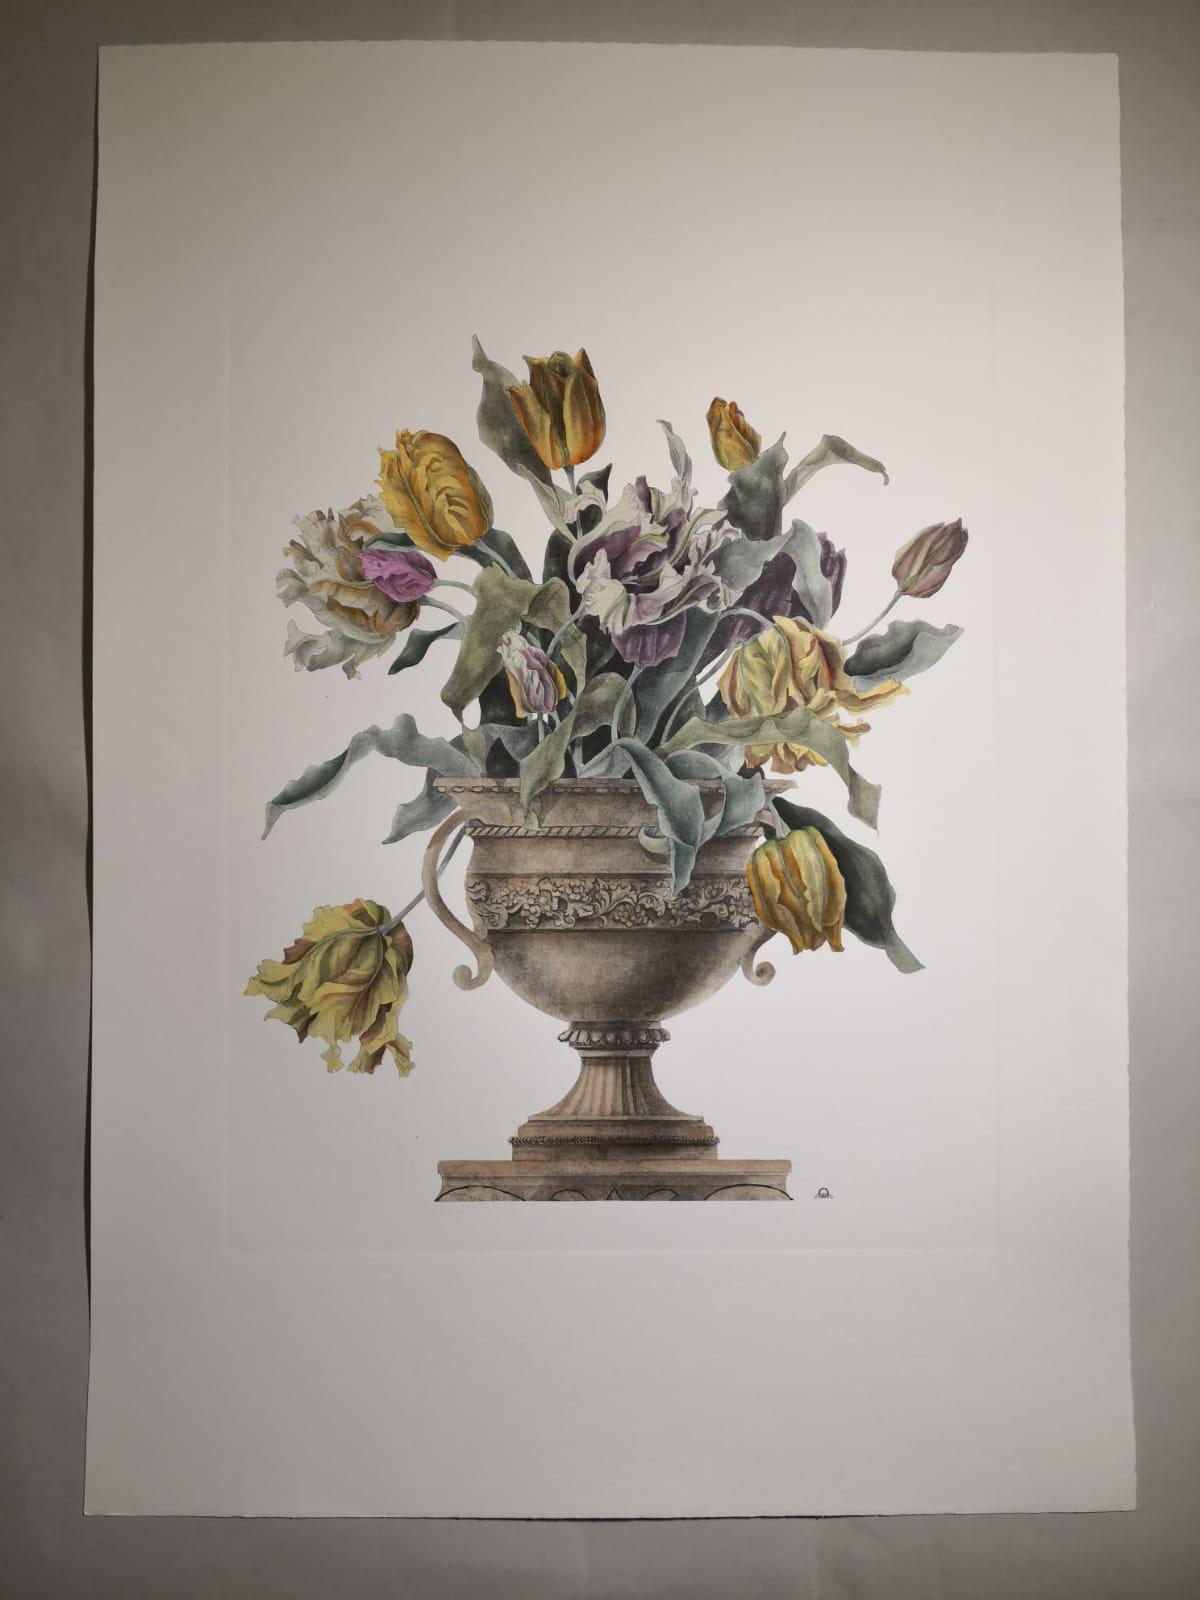 Imprimé élégant et raffiné représentant un vase de fleurs et, précisément, un vase de tulipes jaunes et rose pâle. 
Quatre imprimés de vases différents sont disponibles pour créer une composition colorée.
Toutes les impressions sont entièrement